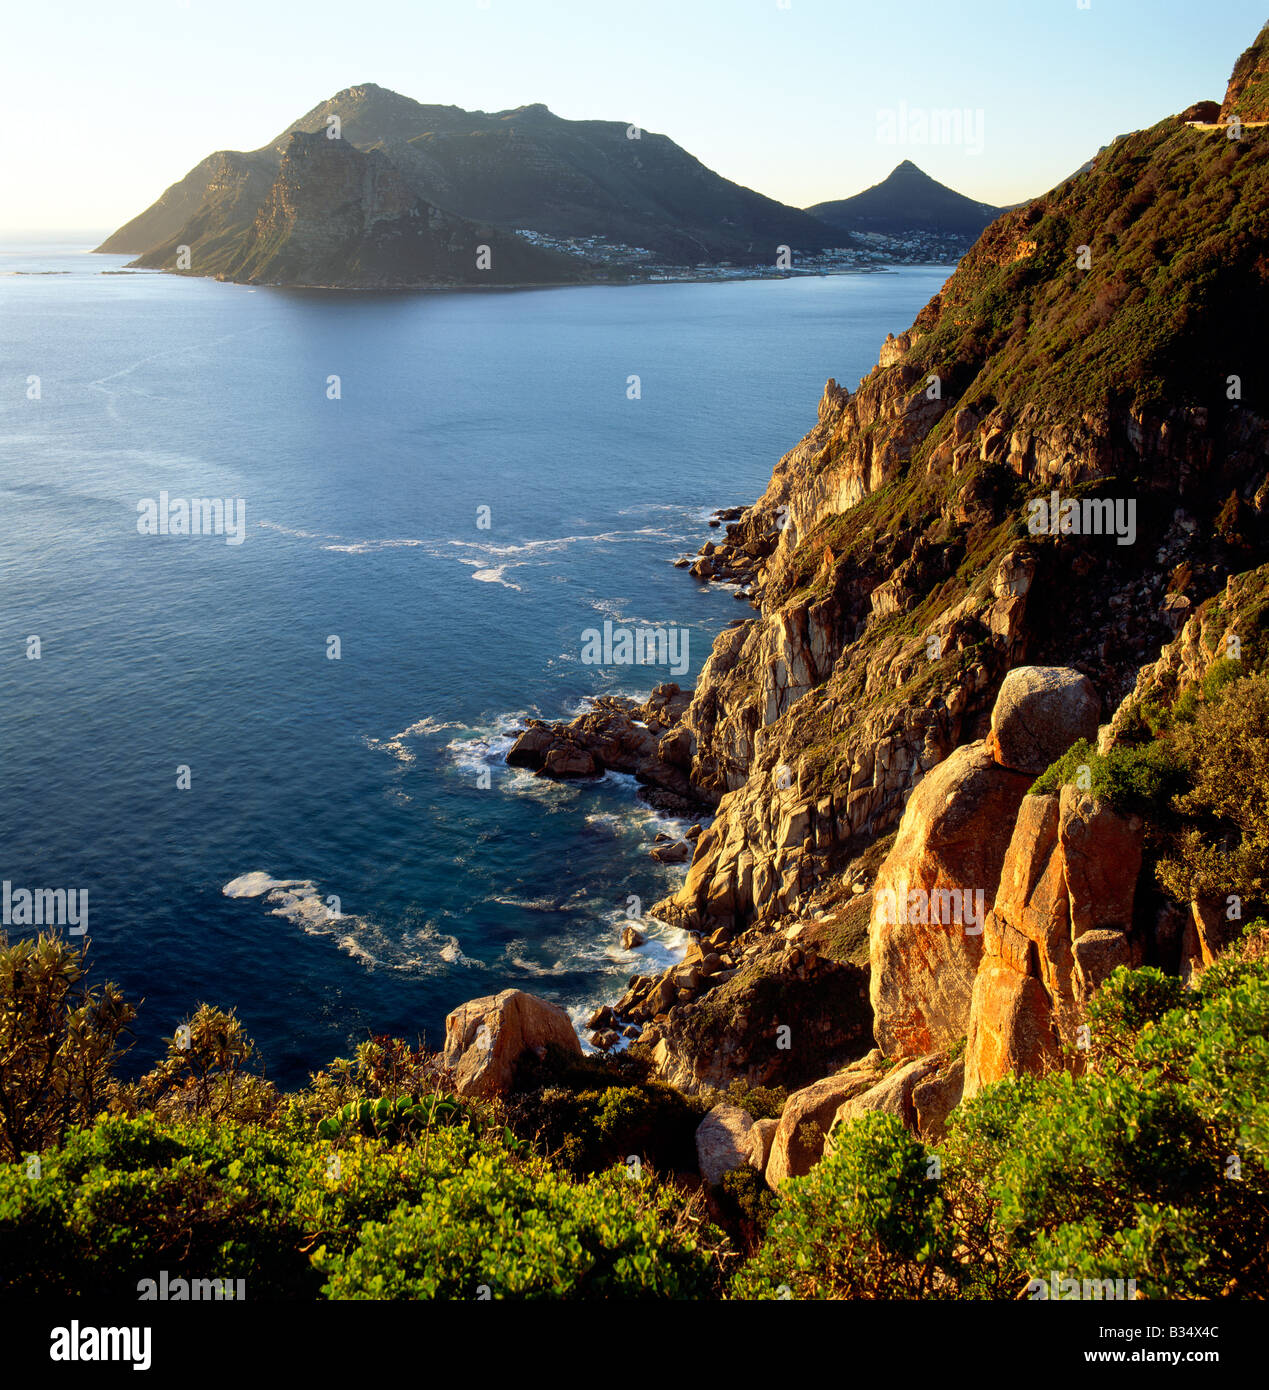 Blick auf Hout Bay & Sentinel Peak von Chapmans Peak Drive, Kap-Halbinsel, südlich von Cape Town, Südafrika Stockfoto